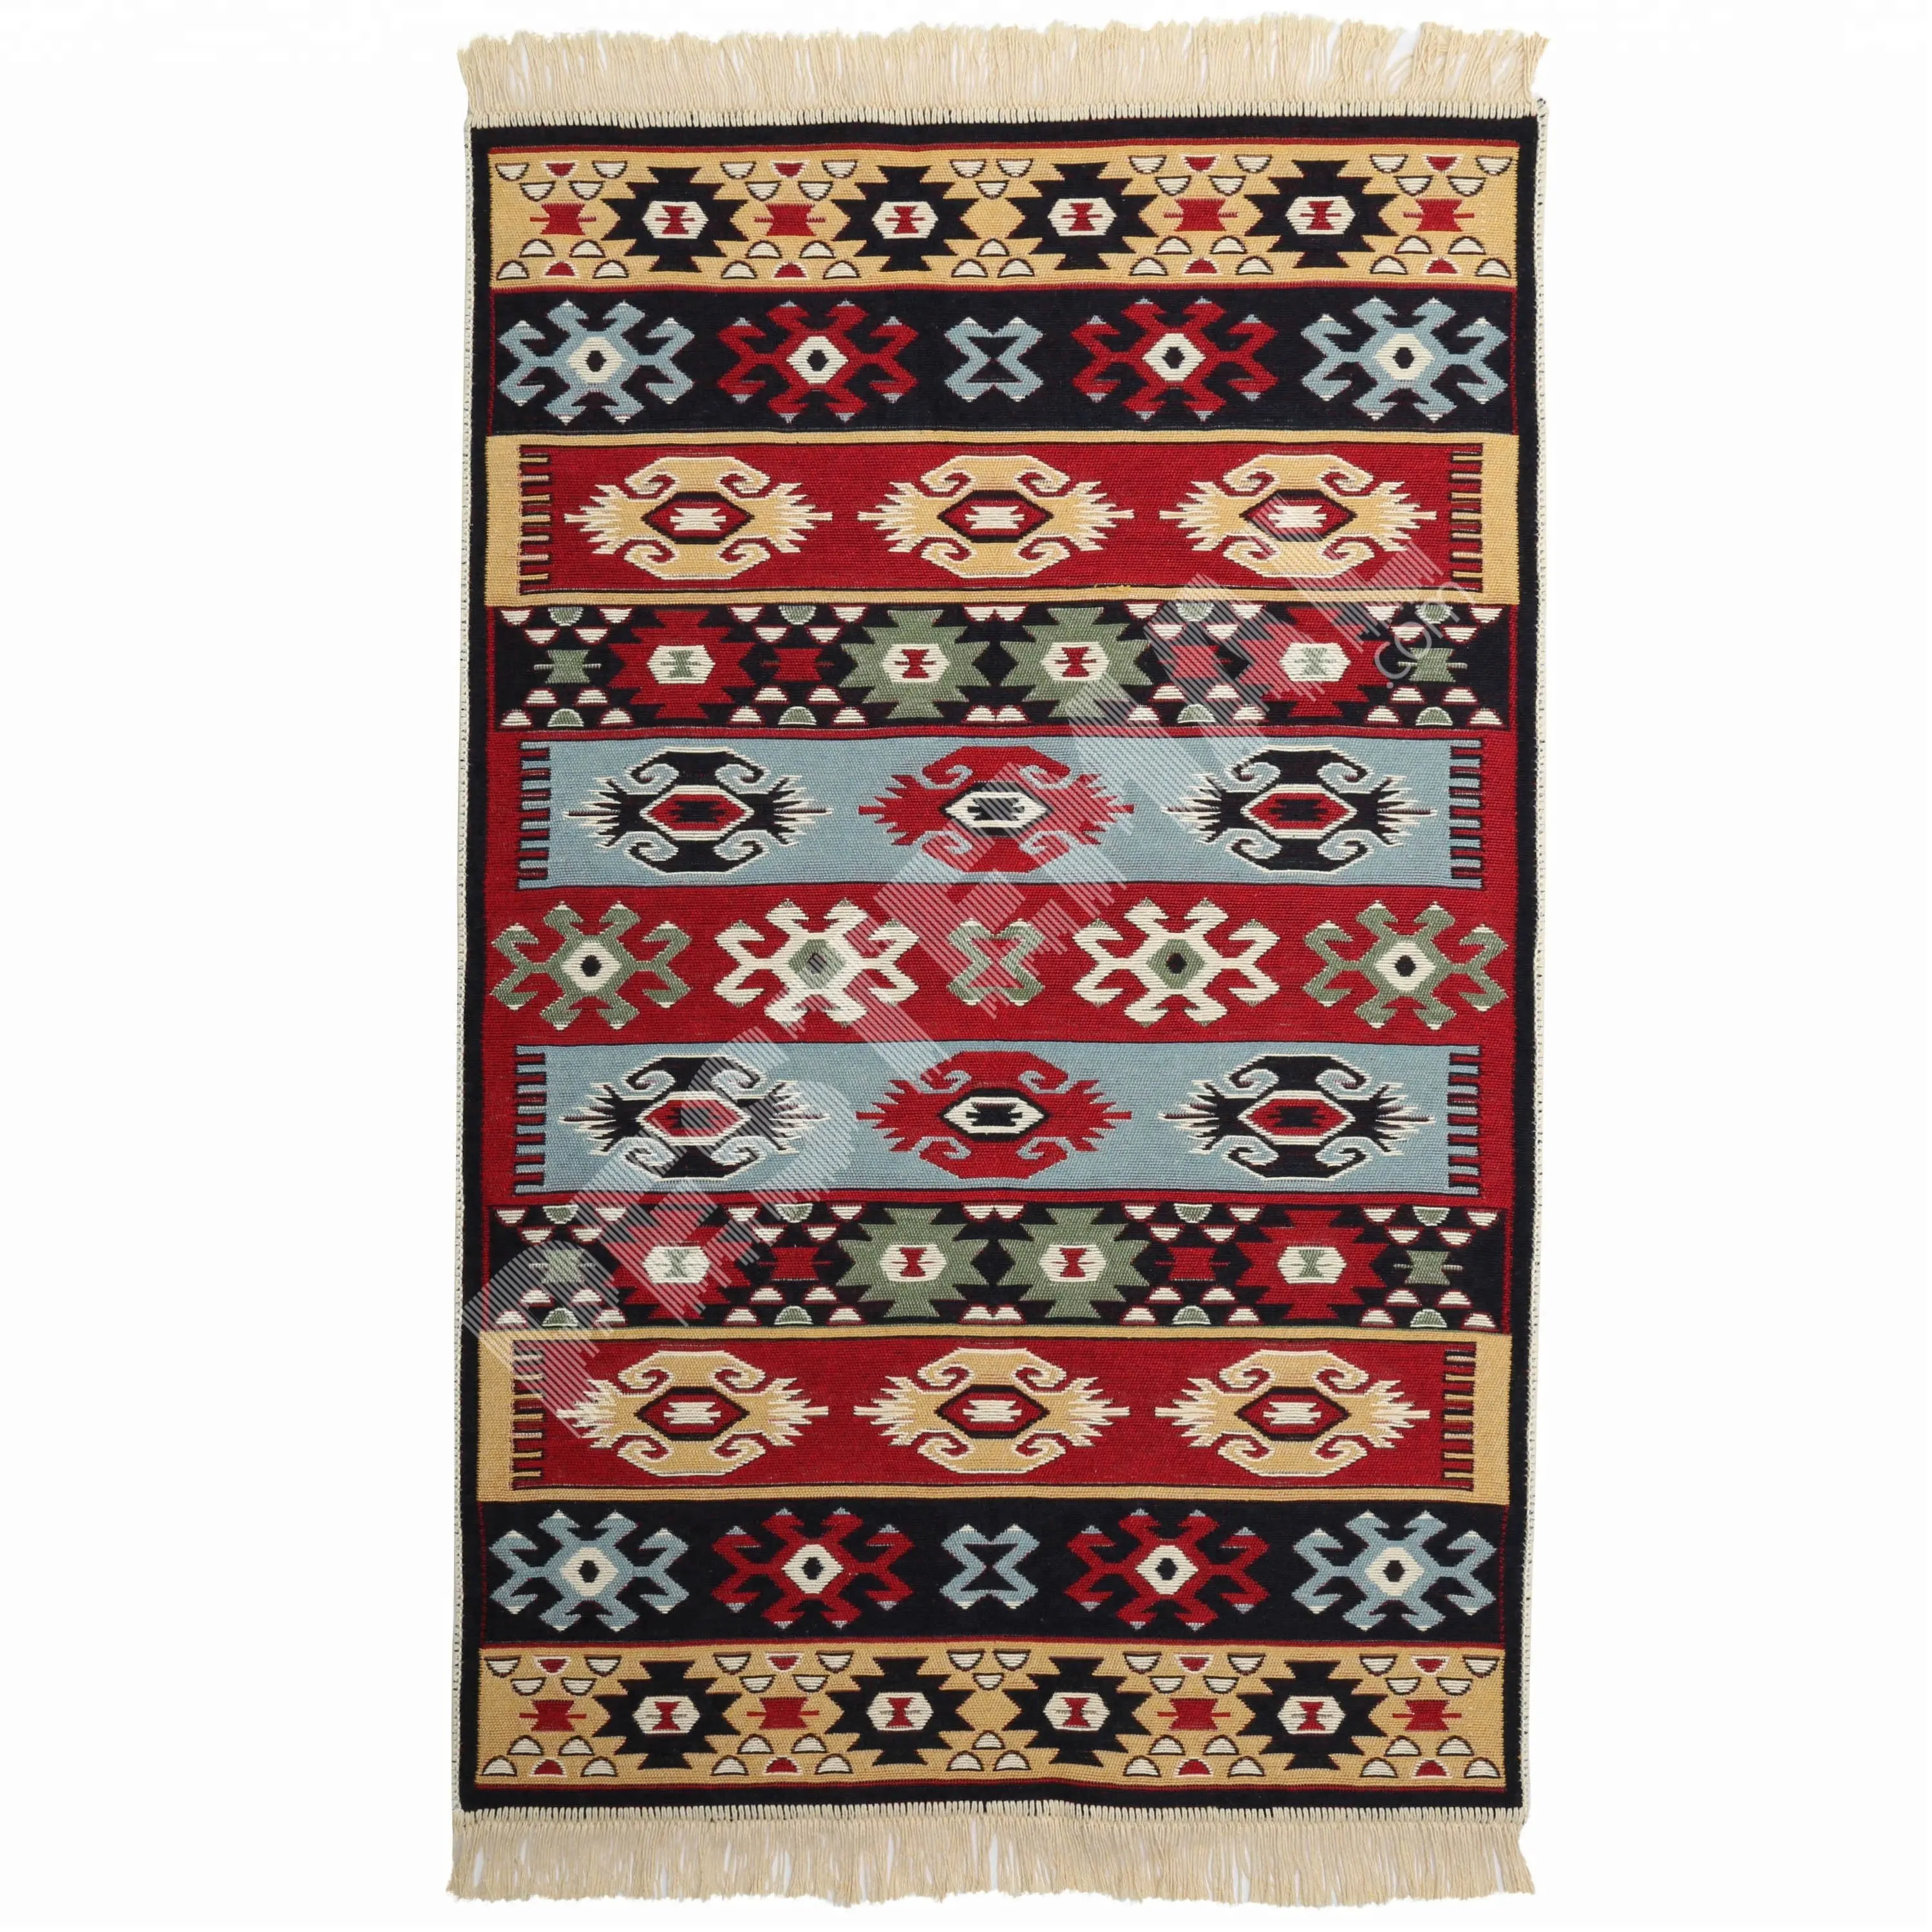 Authentic Turkish Simbol Jacquard Di Karpet dan Karpet dengan Pengiriman Cepat | Kualitas Premium Kilim dengan Harga Diskon % 100 Katun